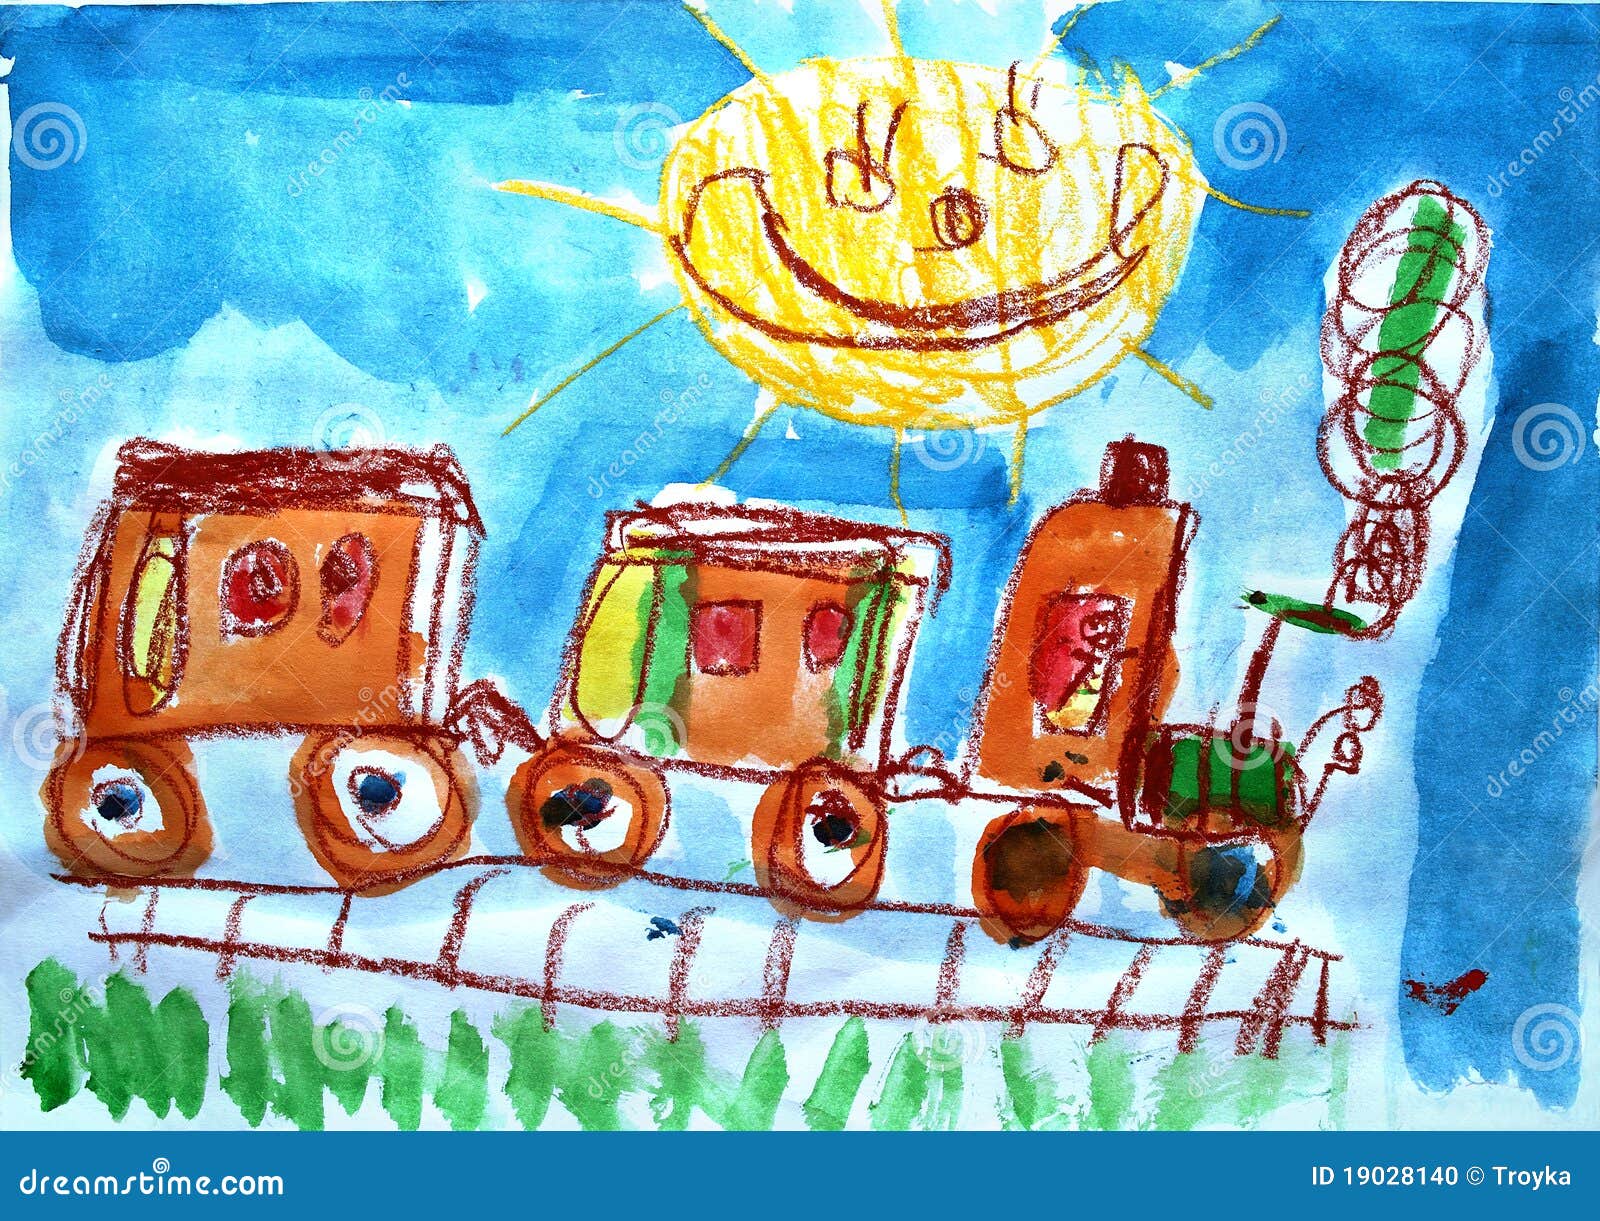 child-s-watercolor-picture-train-19028140.jpg